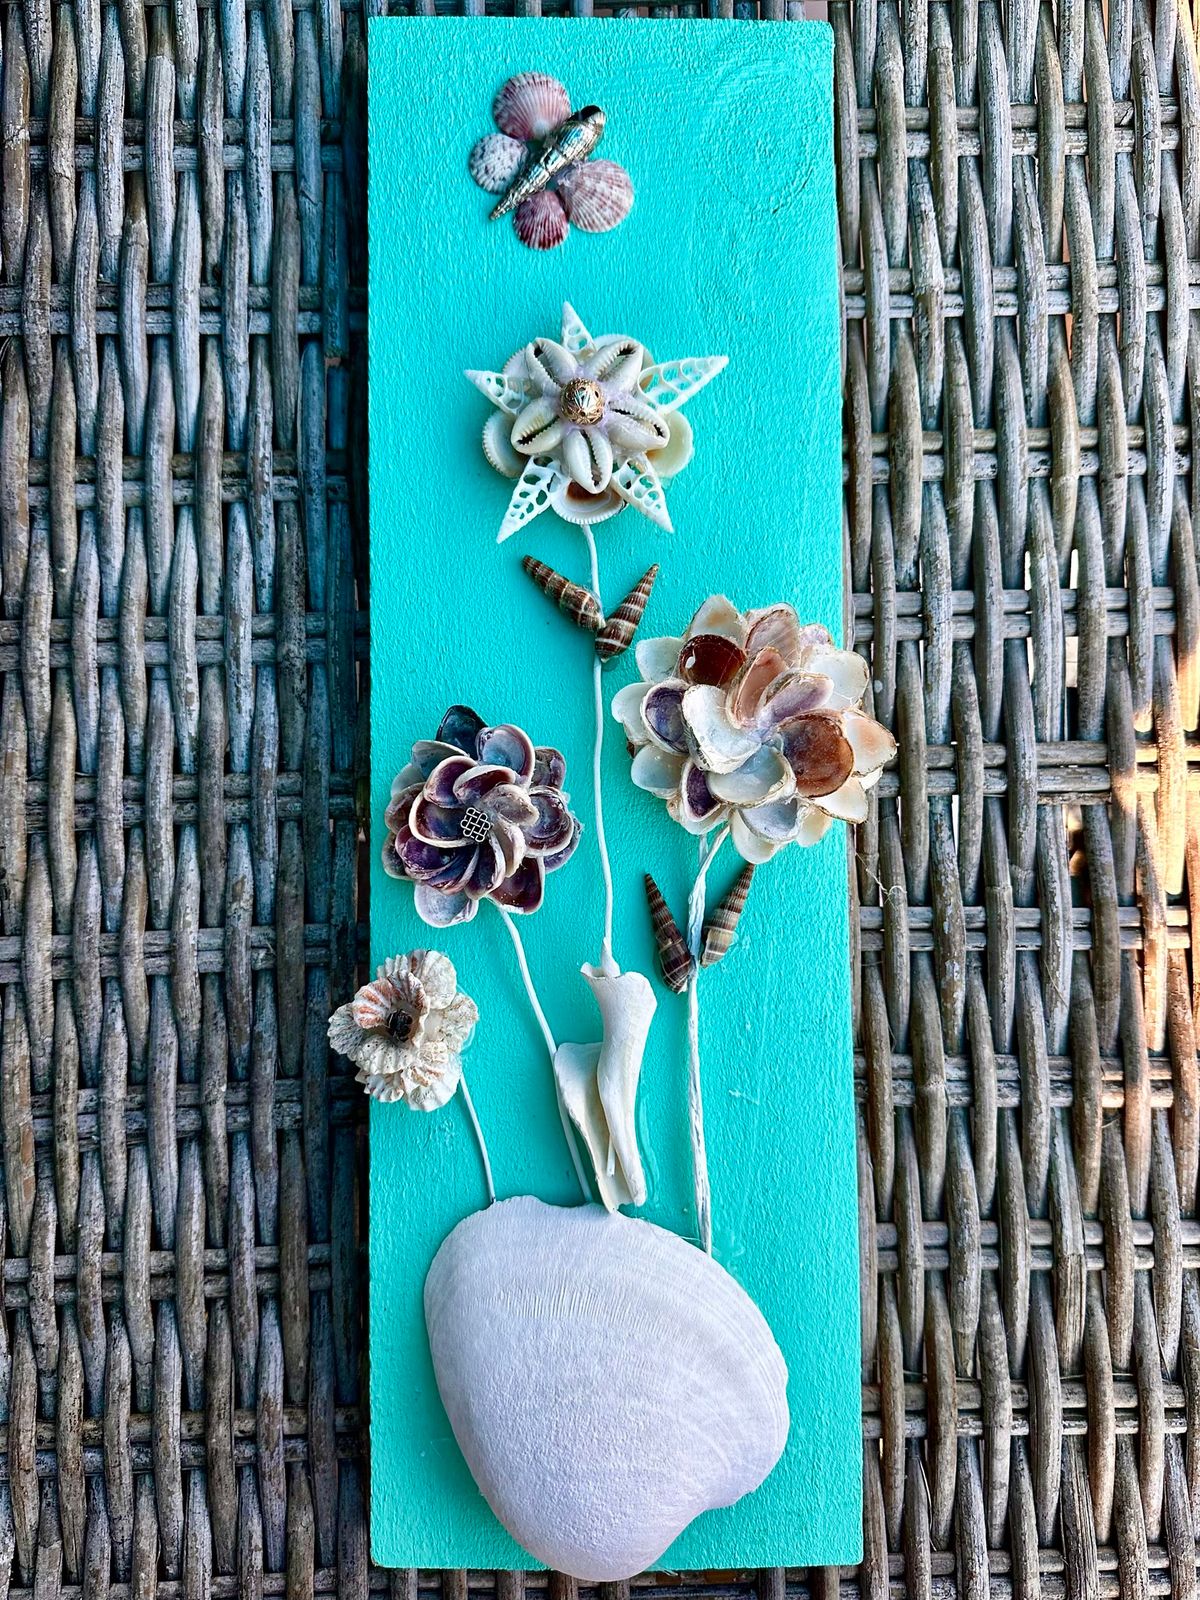 Create a shell flower arrangement